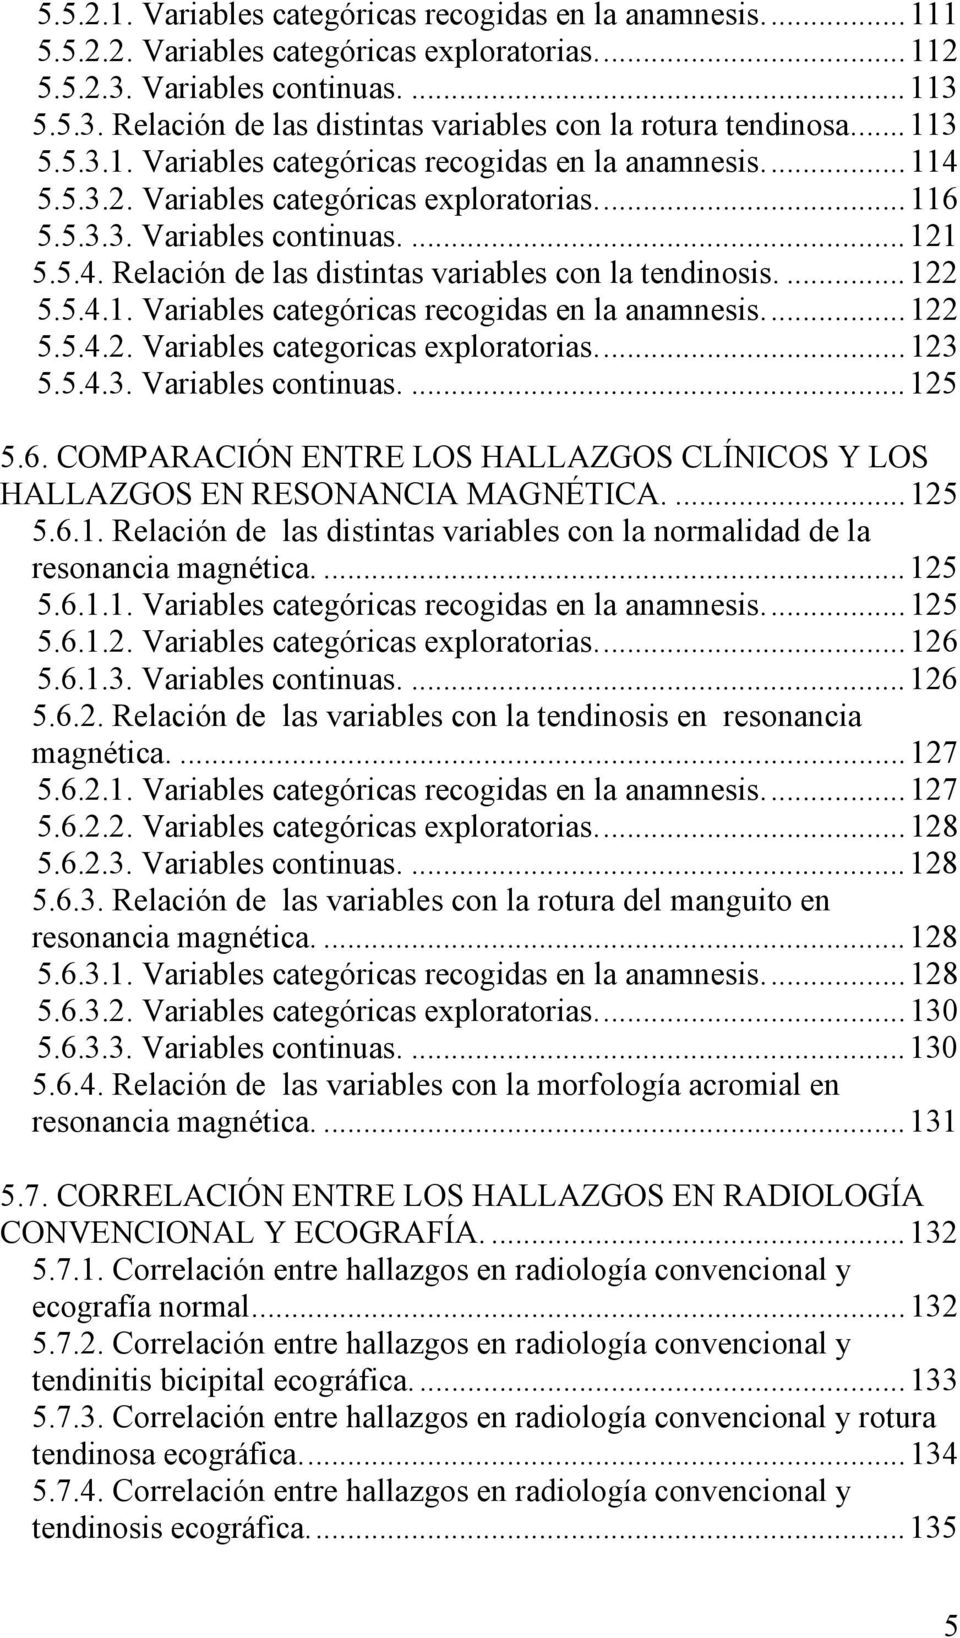 ... 122 5.5.4.1. Variables categóricas recogidas en la anamnesis... 122 5.5.4.2. Variables categoricas exploratorias... 123 5.5.4.3. Variables continuas.... 125 5.6.